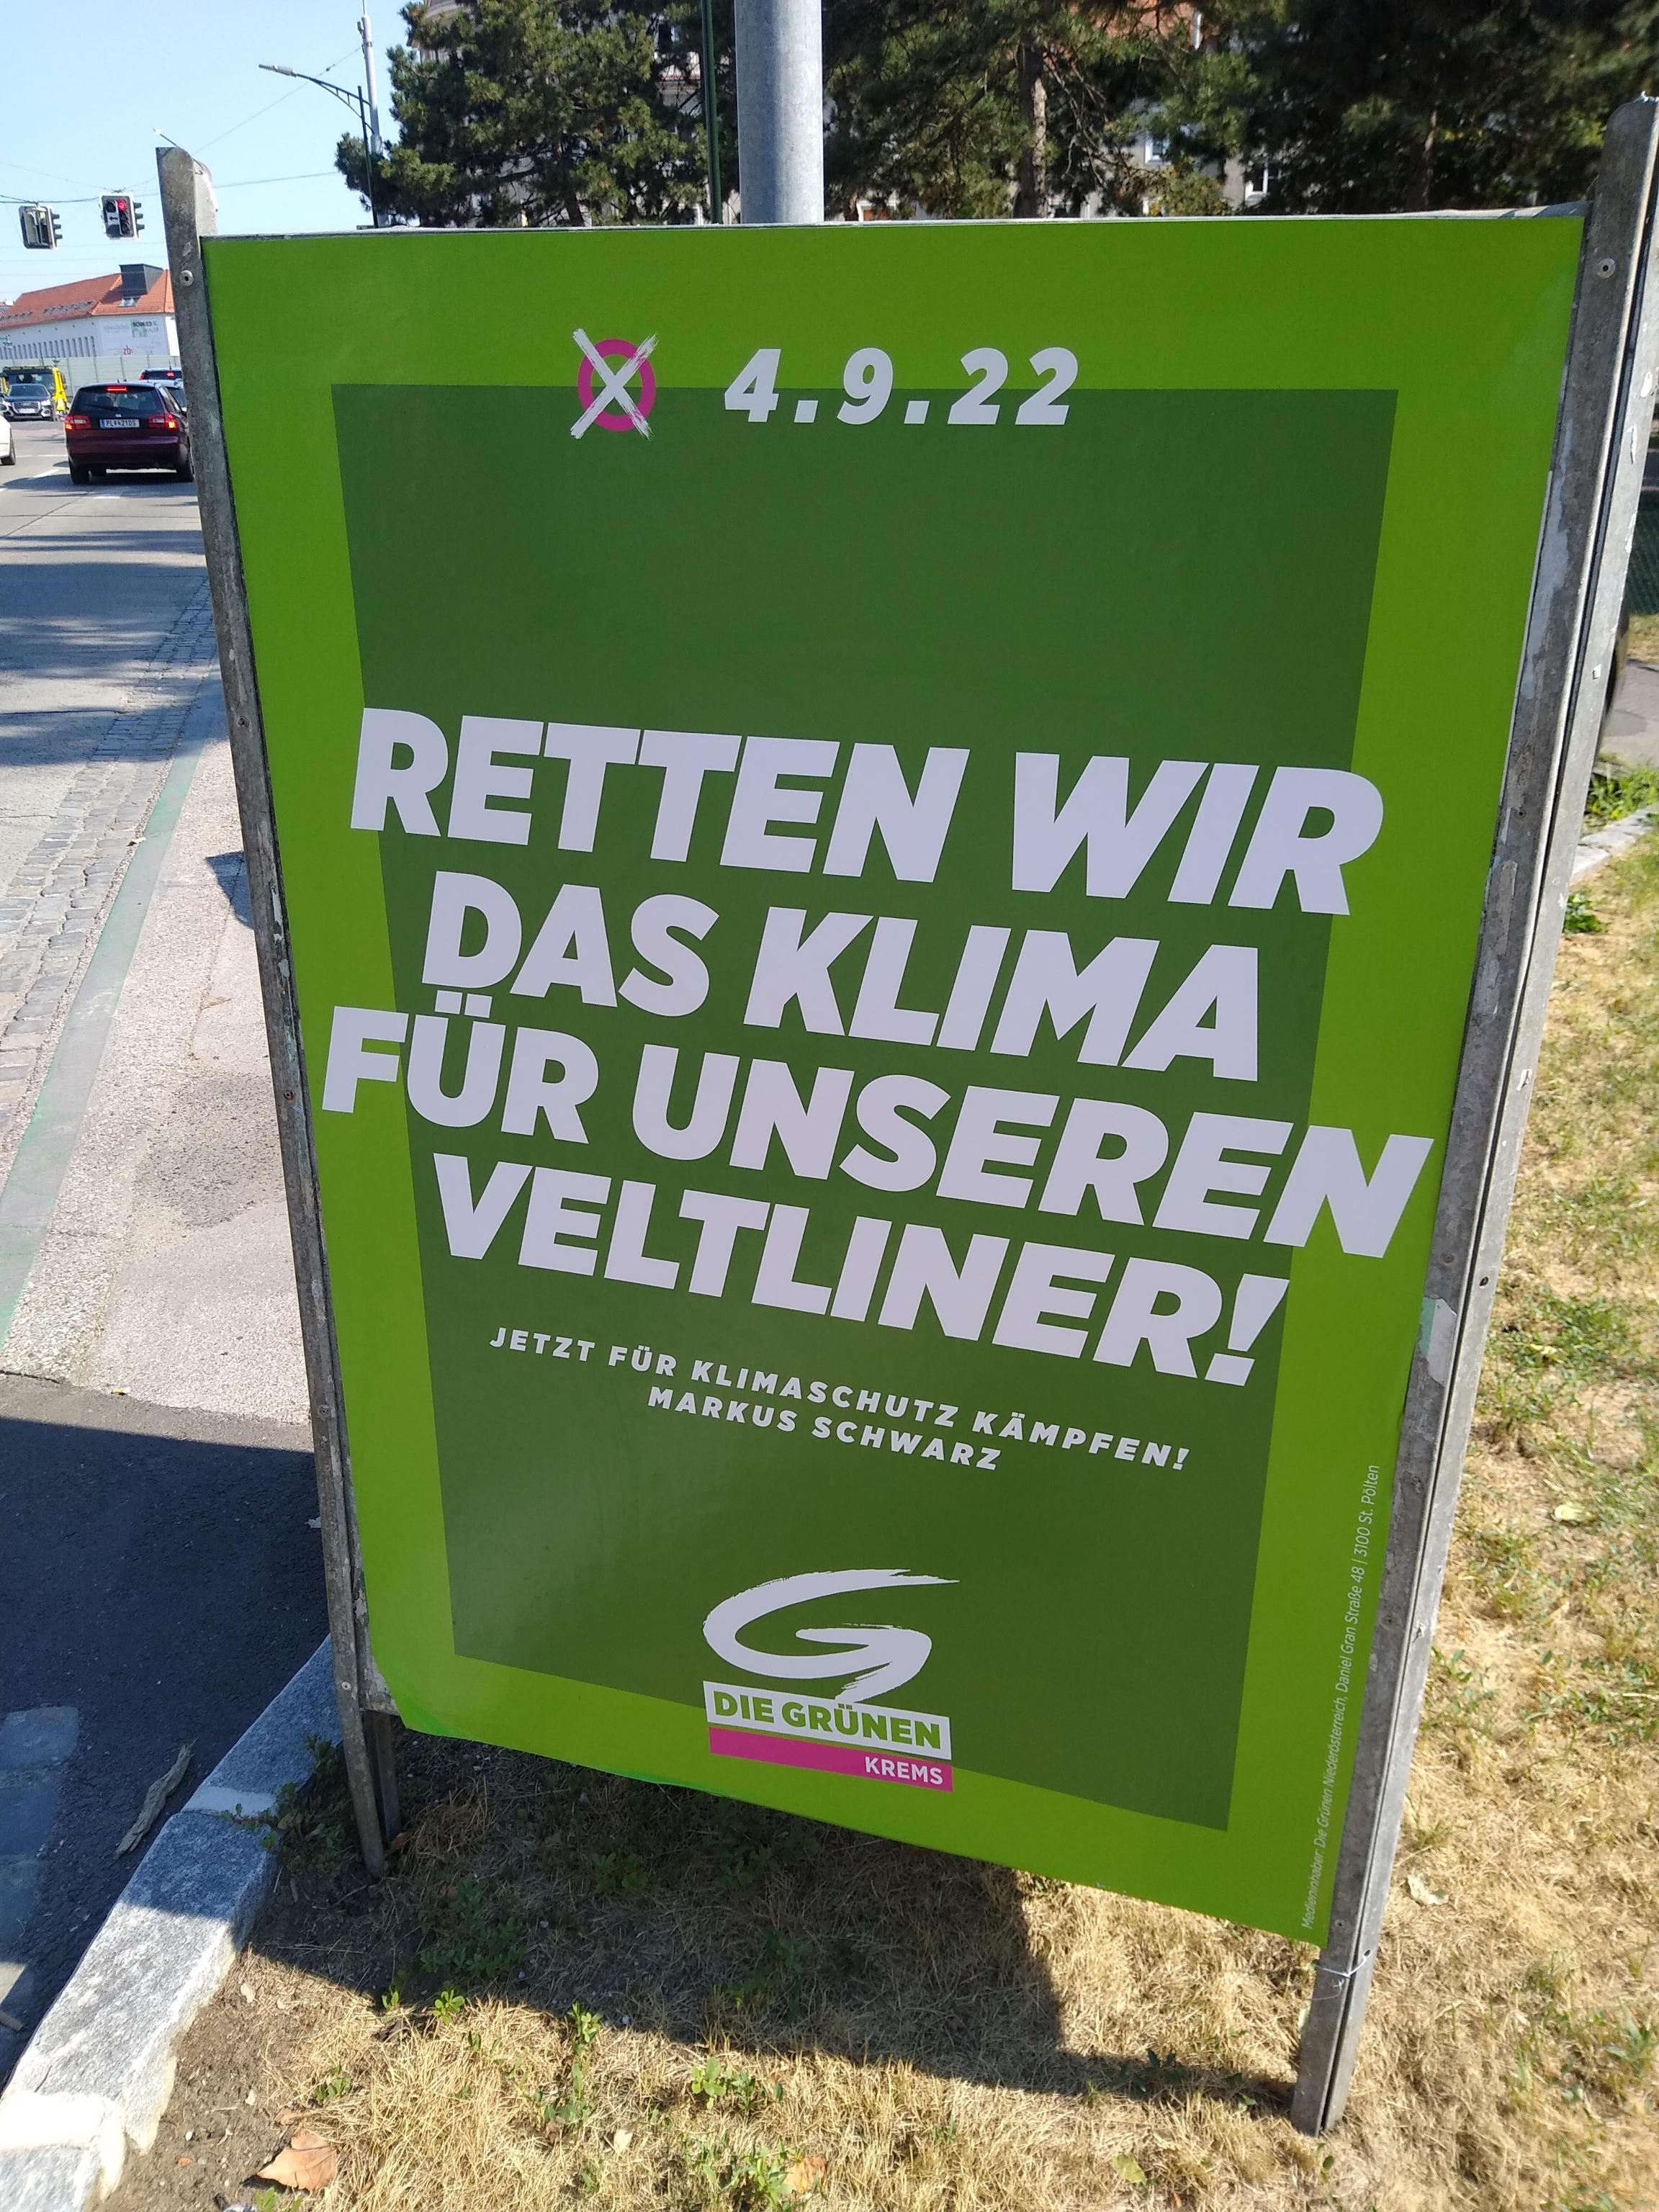 Gut, der Slogan ist schlecht, aber nicht falsch. In Österreich muss man halt im freundlichen Sinne immer die Alkoholiker-Seele ansprechen.